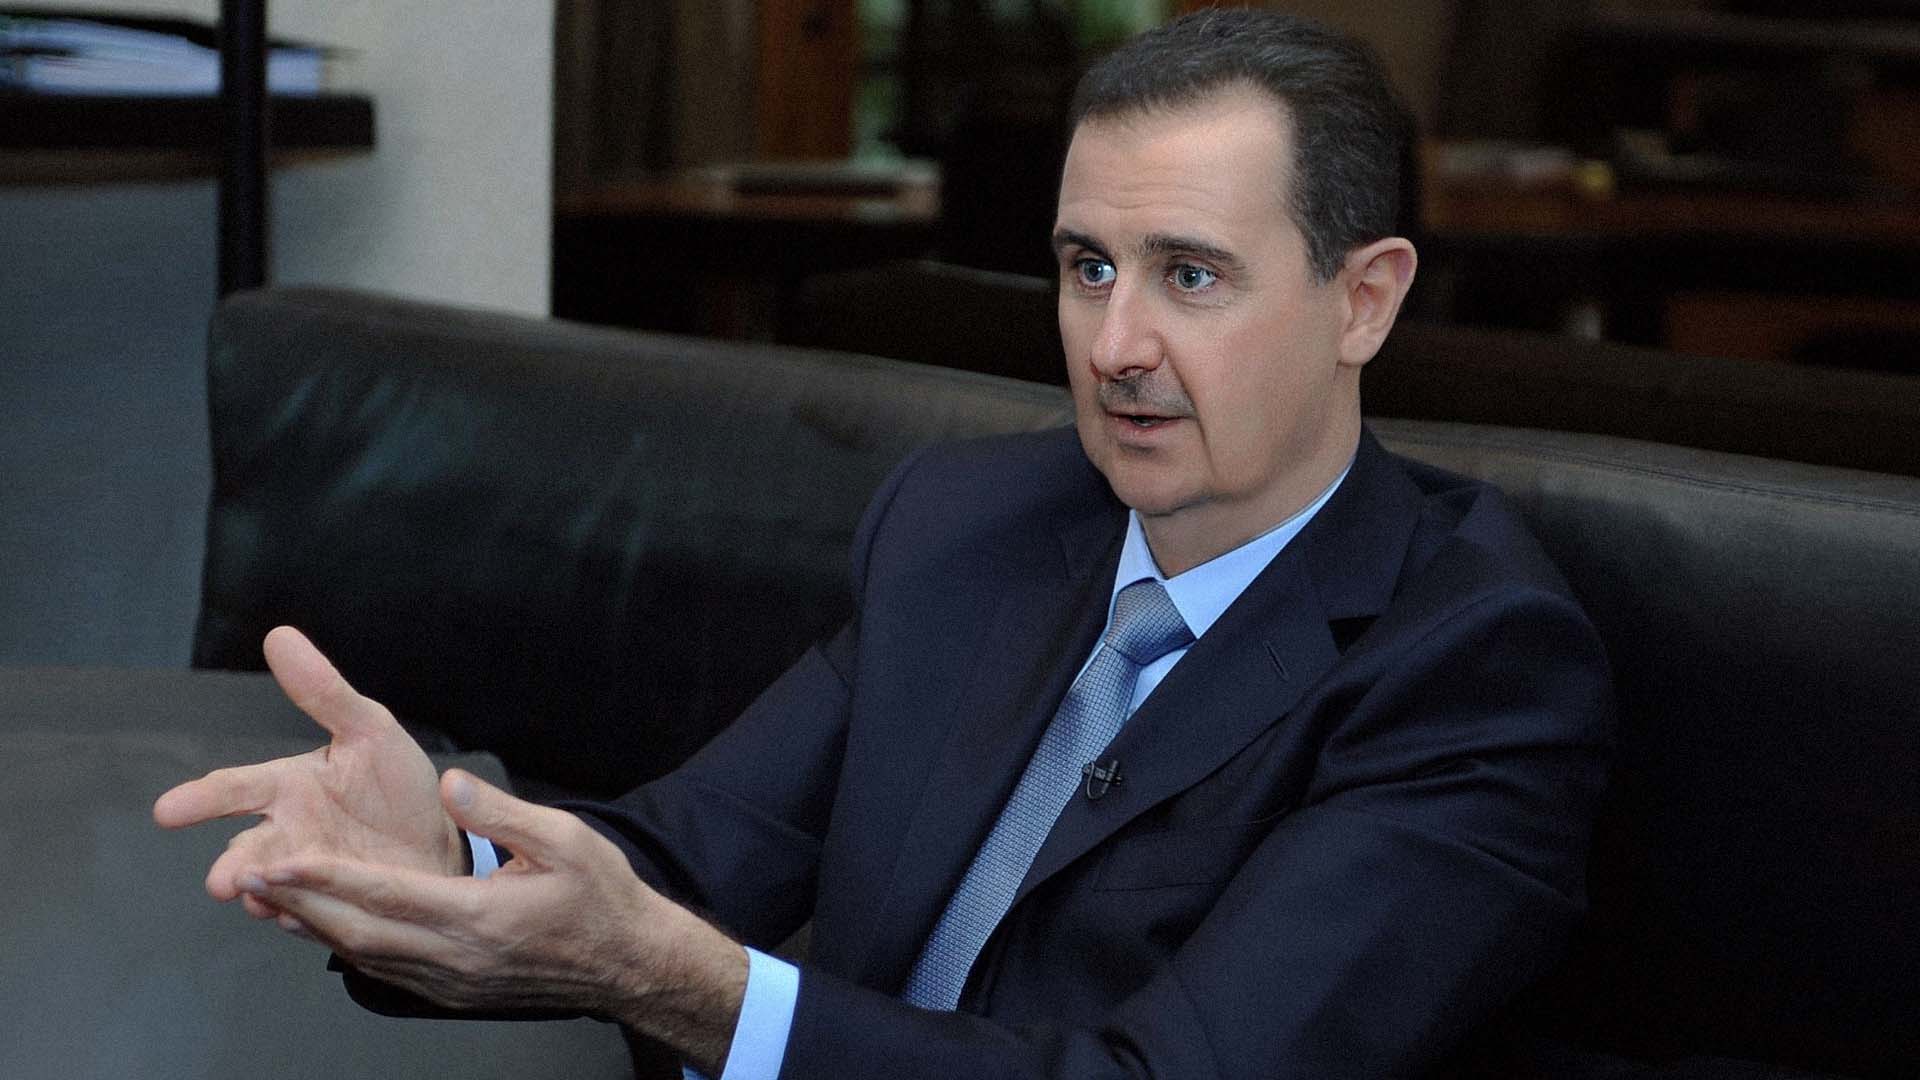 صورة  الأسد يؤكد أنَّ العقوبات قطعت البنزين والمازوت واقتحمت المخازن لتسرق المساعدات وأكلت آخر علبة فول في يده